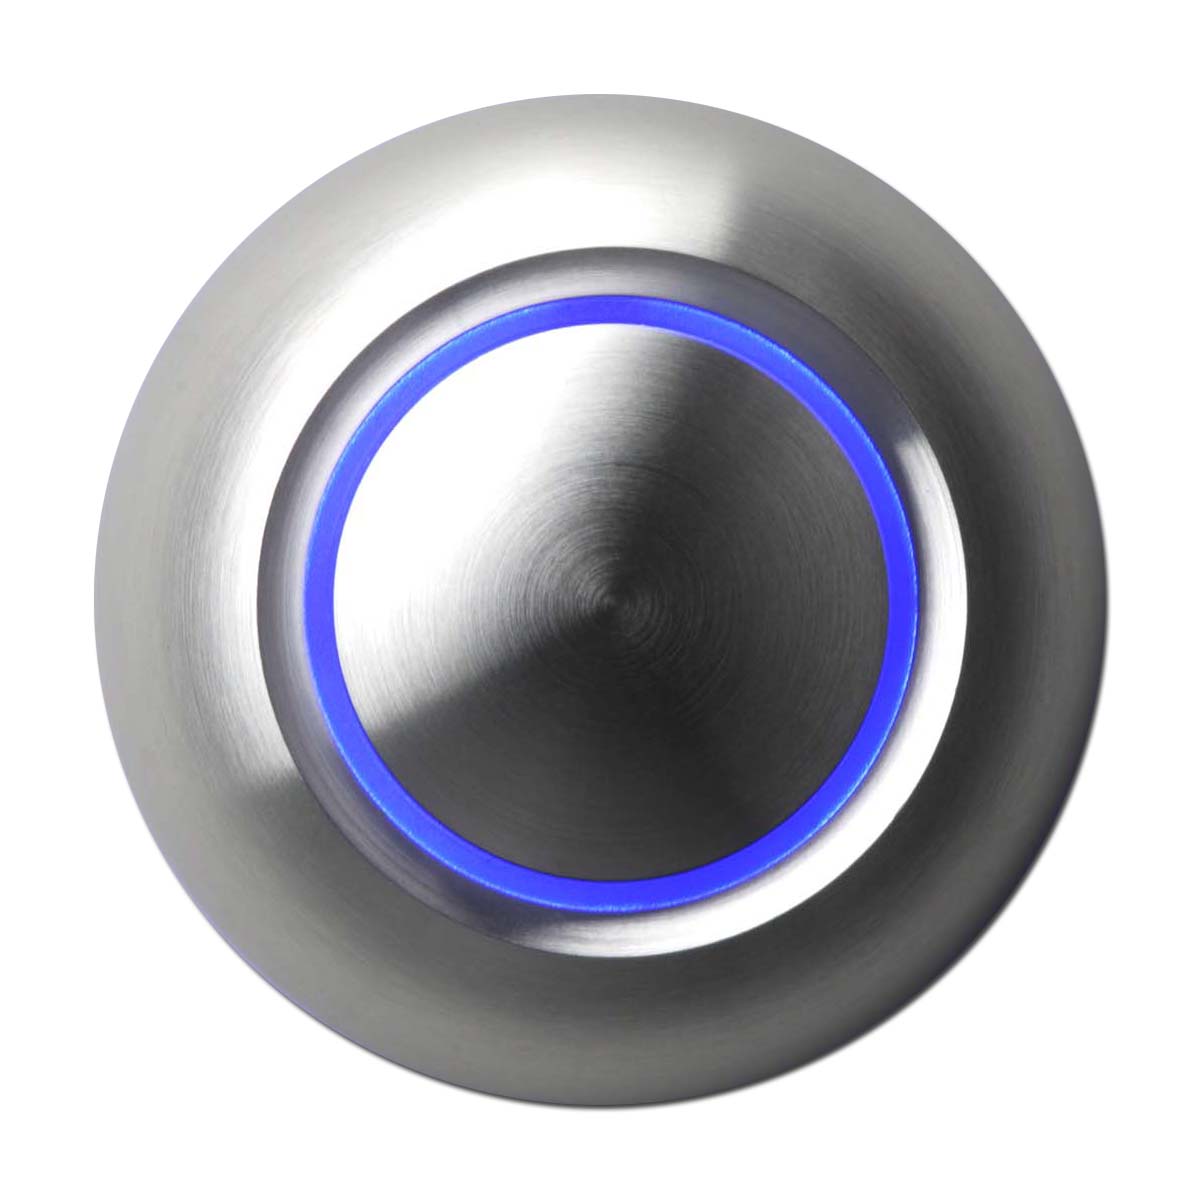 Купить круглую кнопку. Дверной звонок true illuminated Doorbell button, цвет Architectural Bronze. Кнопка металлическая с подсветкой. Кнопка звонка с подсветкой. Кнопка звонка металлическая.